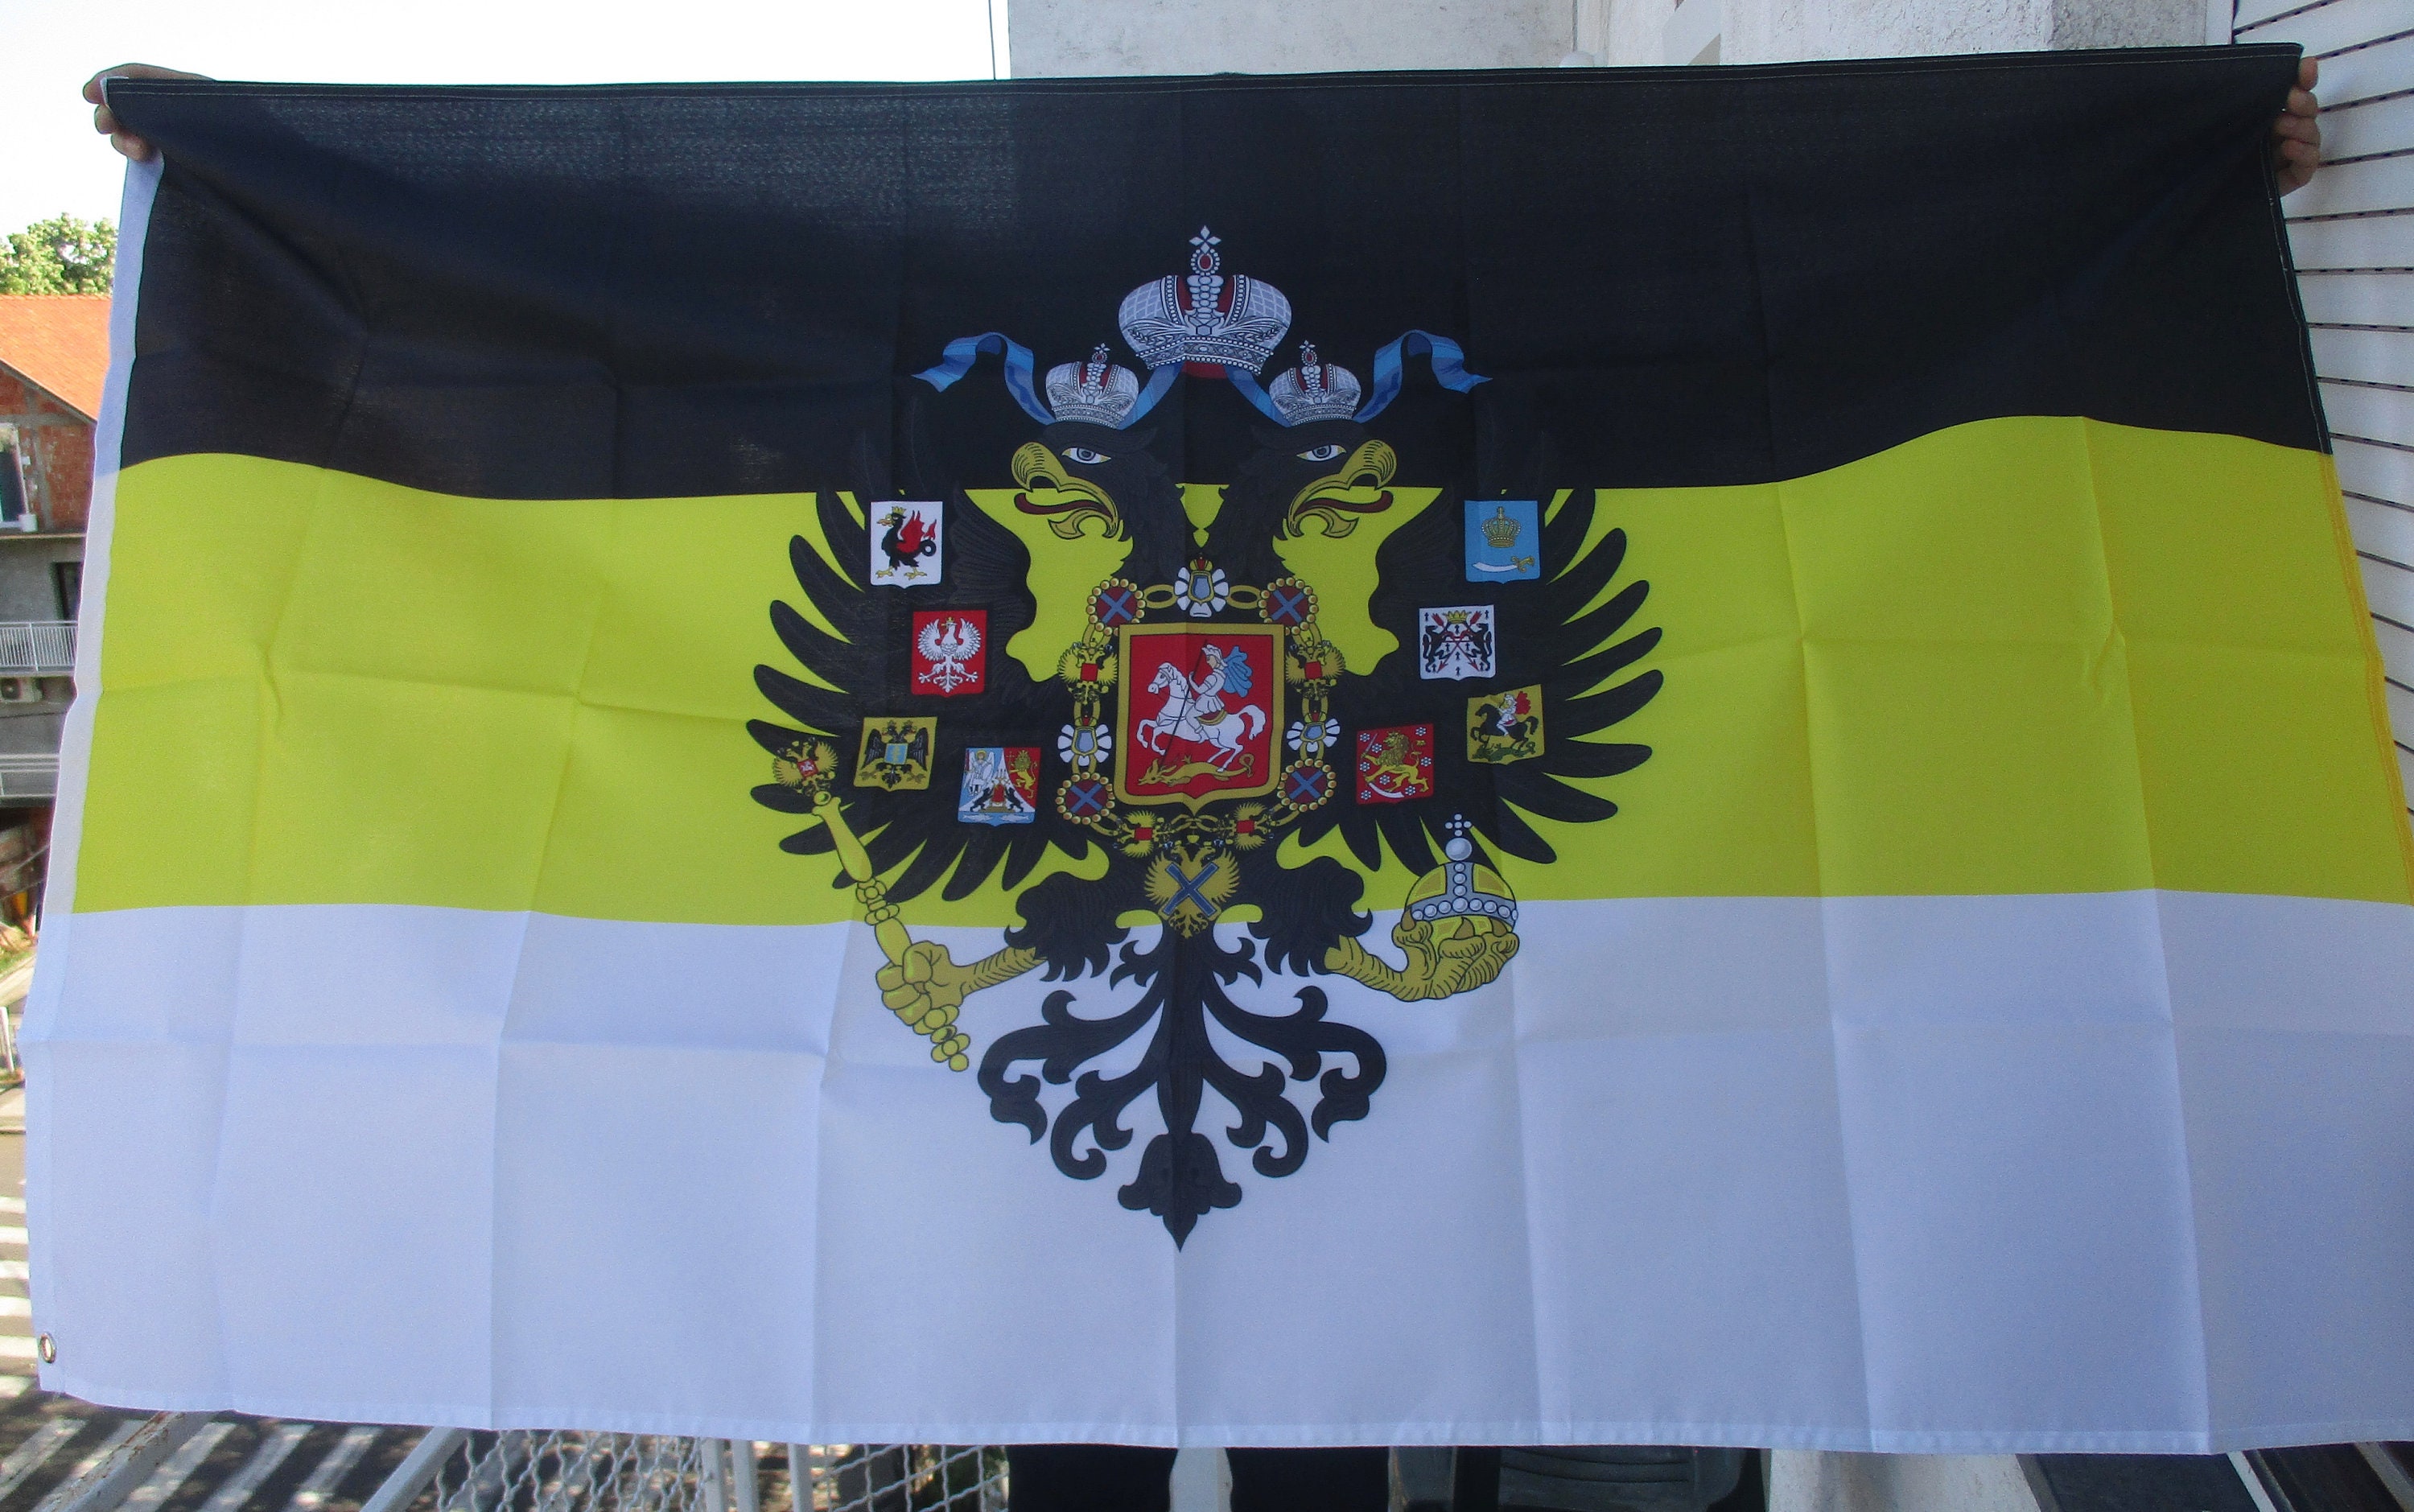  Russia Imperial Flag 3'x5' Russian Tsar Banner